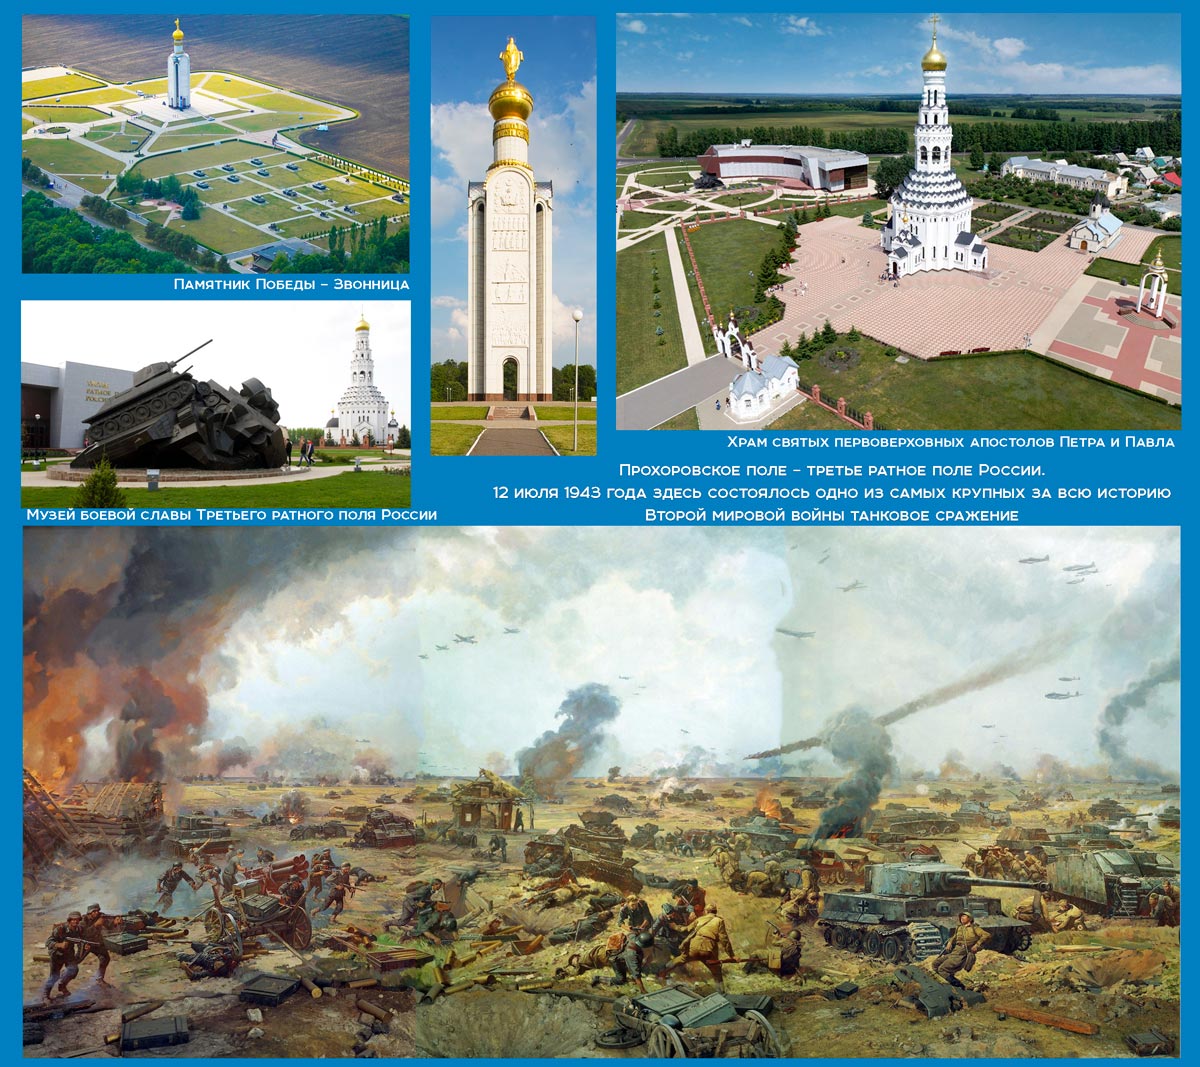 12 июля наша белгородская земля и вся Россия отмечают важнейшую дату в героической истории страны – 80-ю годовщину сражения под Прохоровкой.